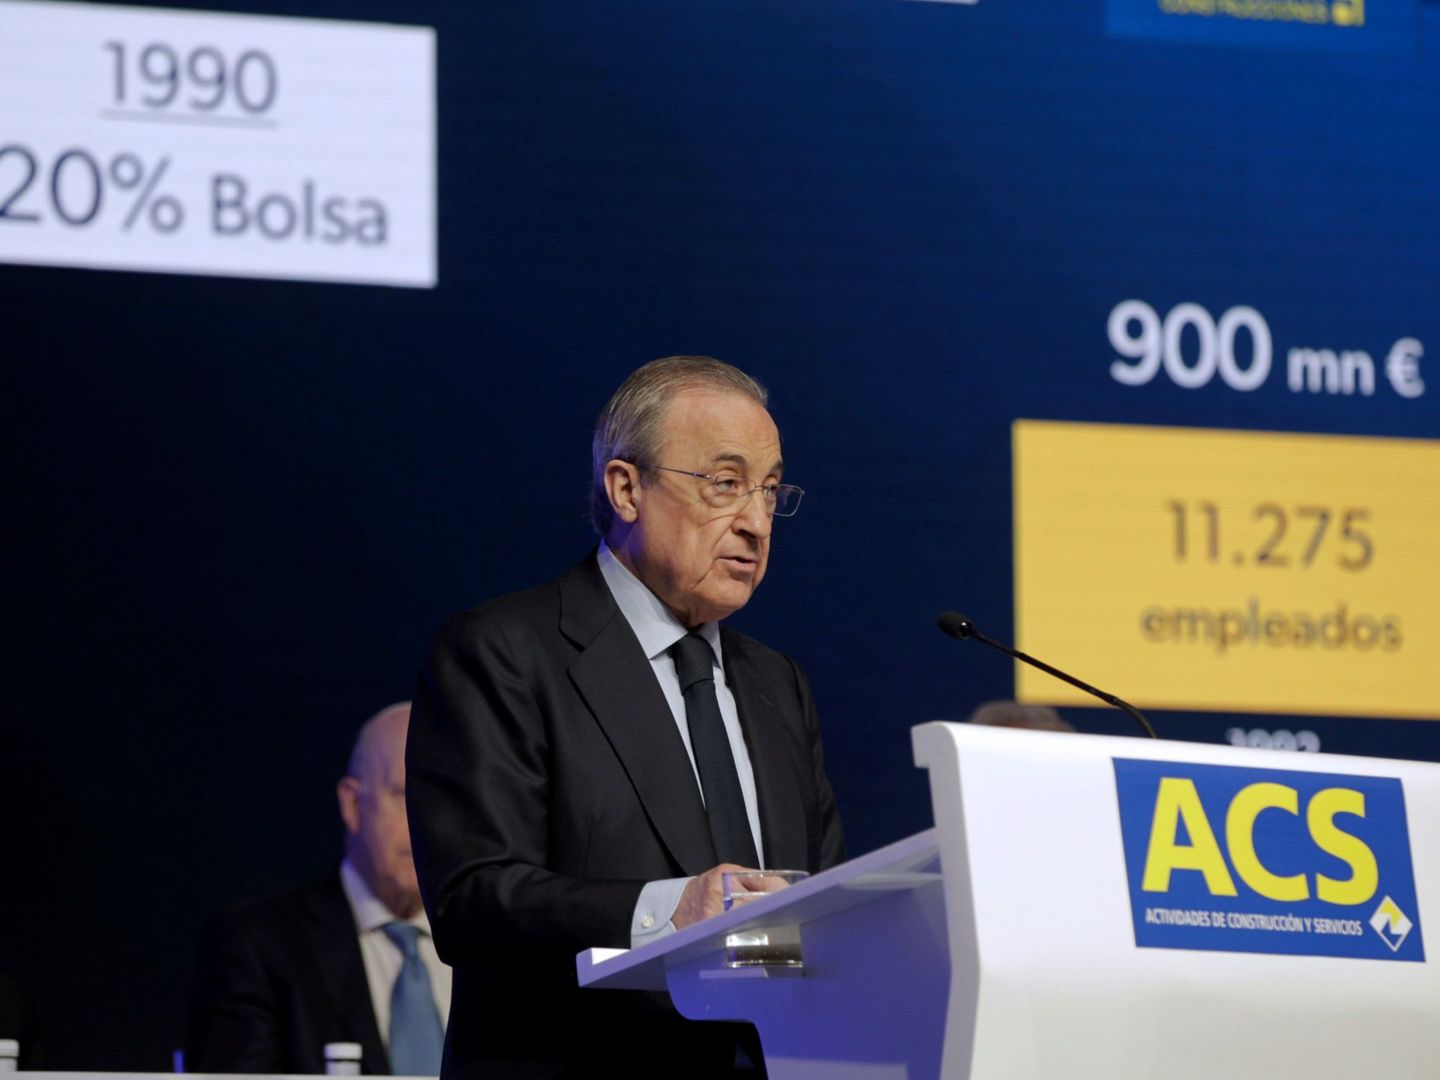 El presidente de ACS, Florentino Pérez, en un acto de la compañía. (EFE)